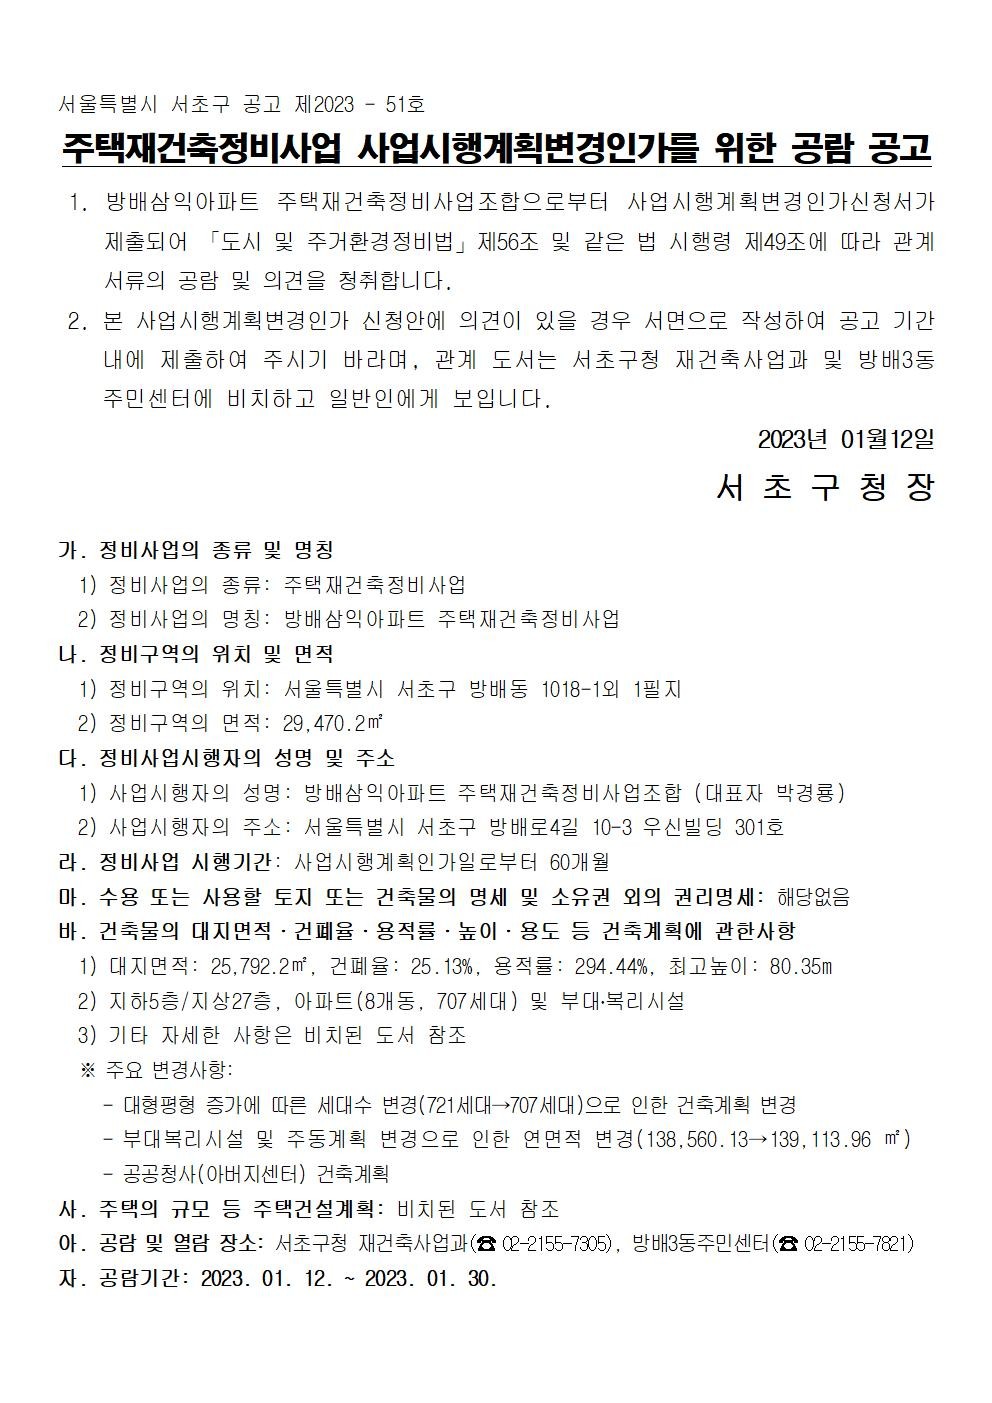 서울 서초구 방배삼익아파트 사업시행계획변경을 위한 주민공람 공고문